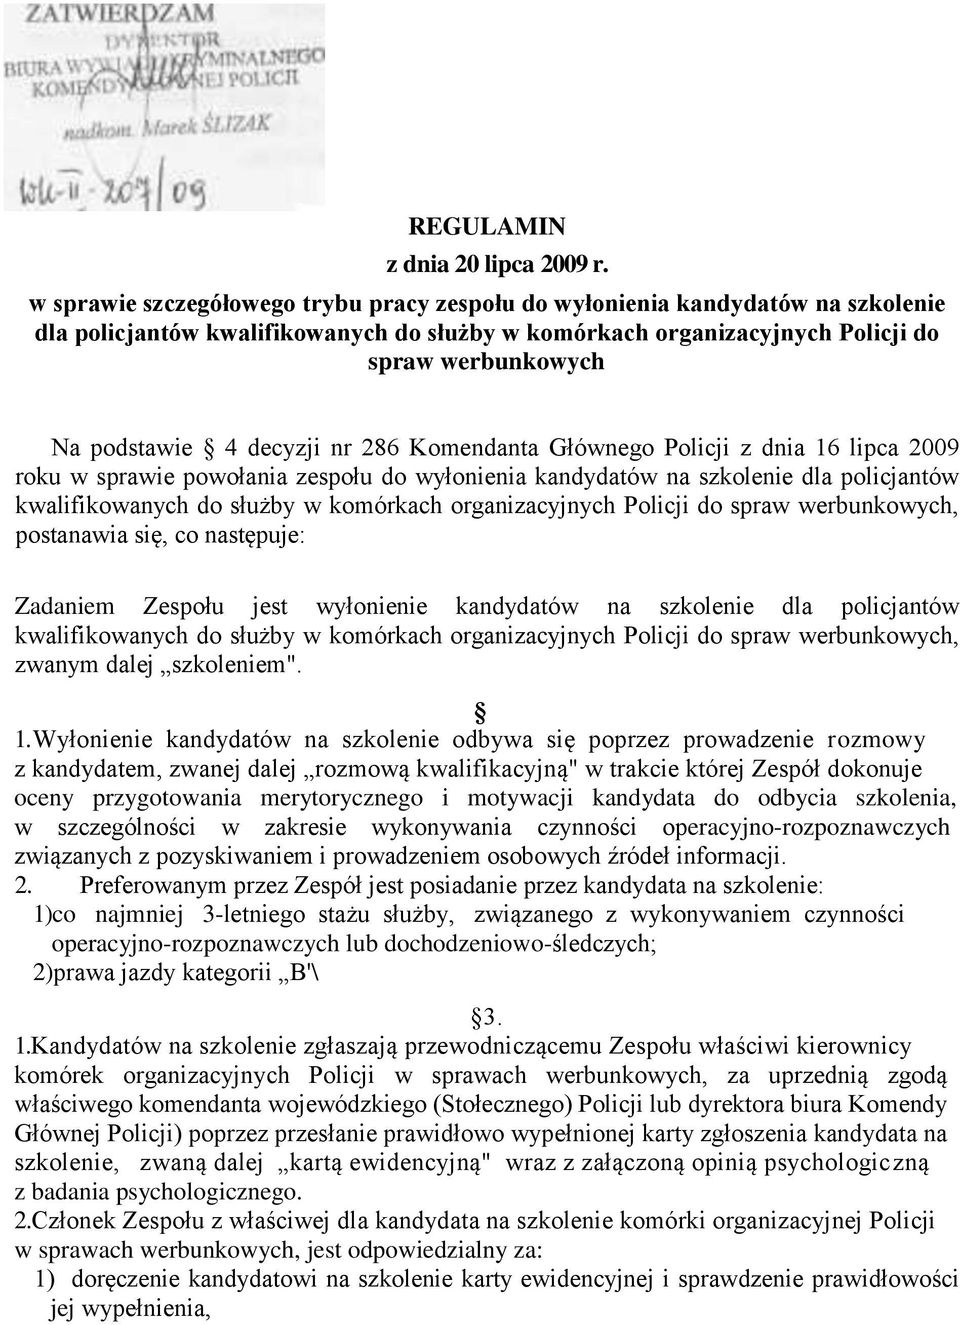 decyzji nr 286 Komendanta Głównego Policji z dnia 16 lipca 2009 roku w sprawie powołania zespołu do wyłonienia kandydatów na szkolenie dla policjantów kwalifikowanych do służby w komórkach